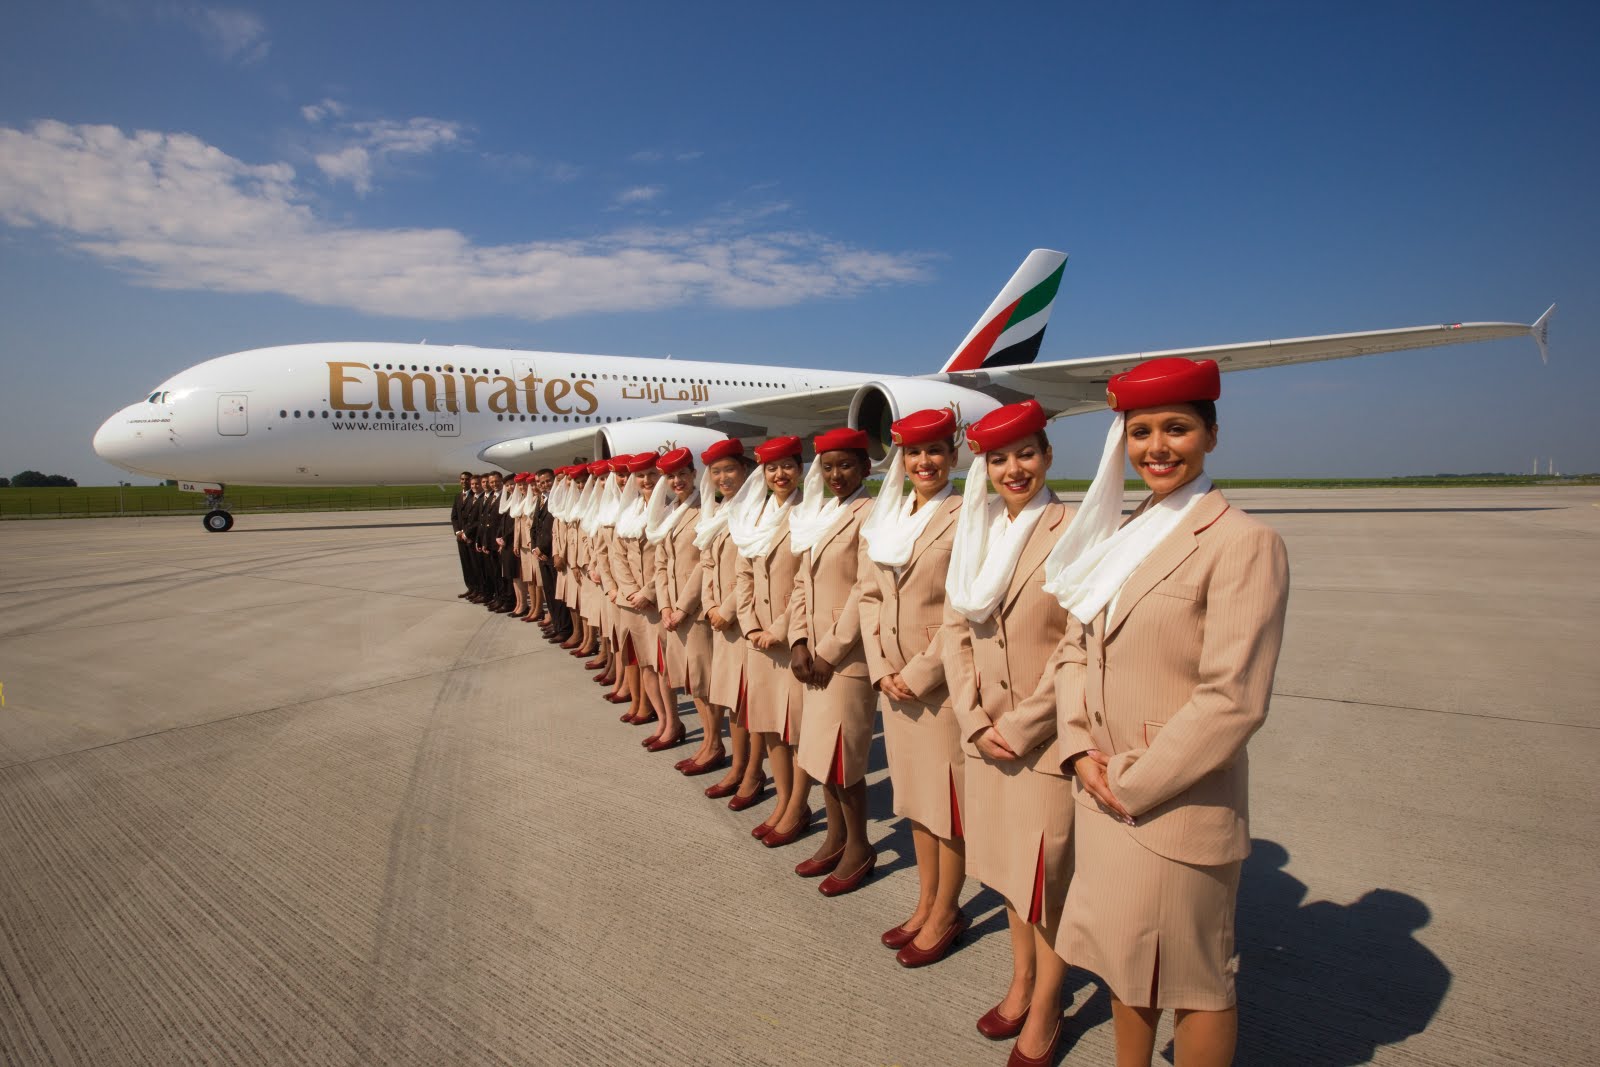 Emirates cerca personale, selezioni aperte anche a Milano